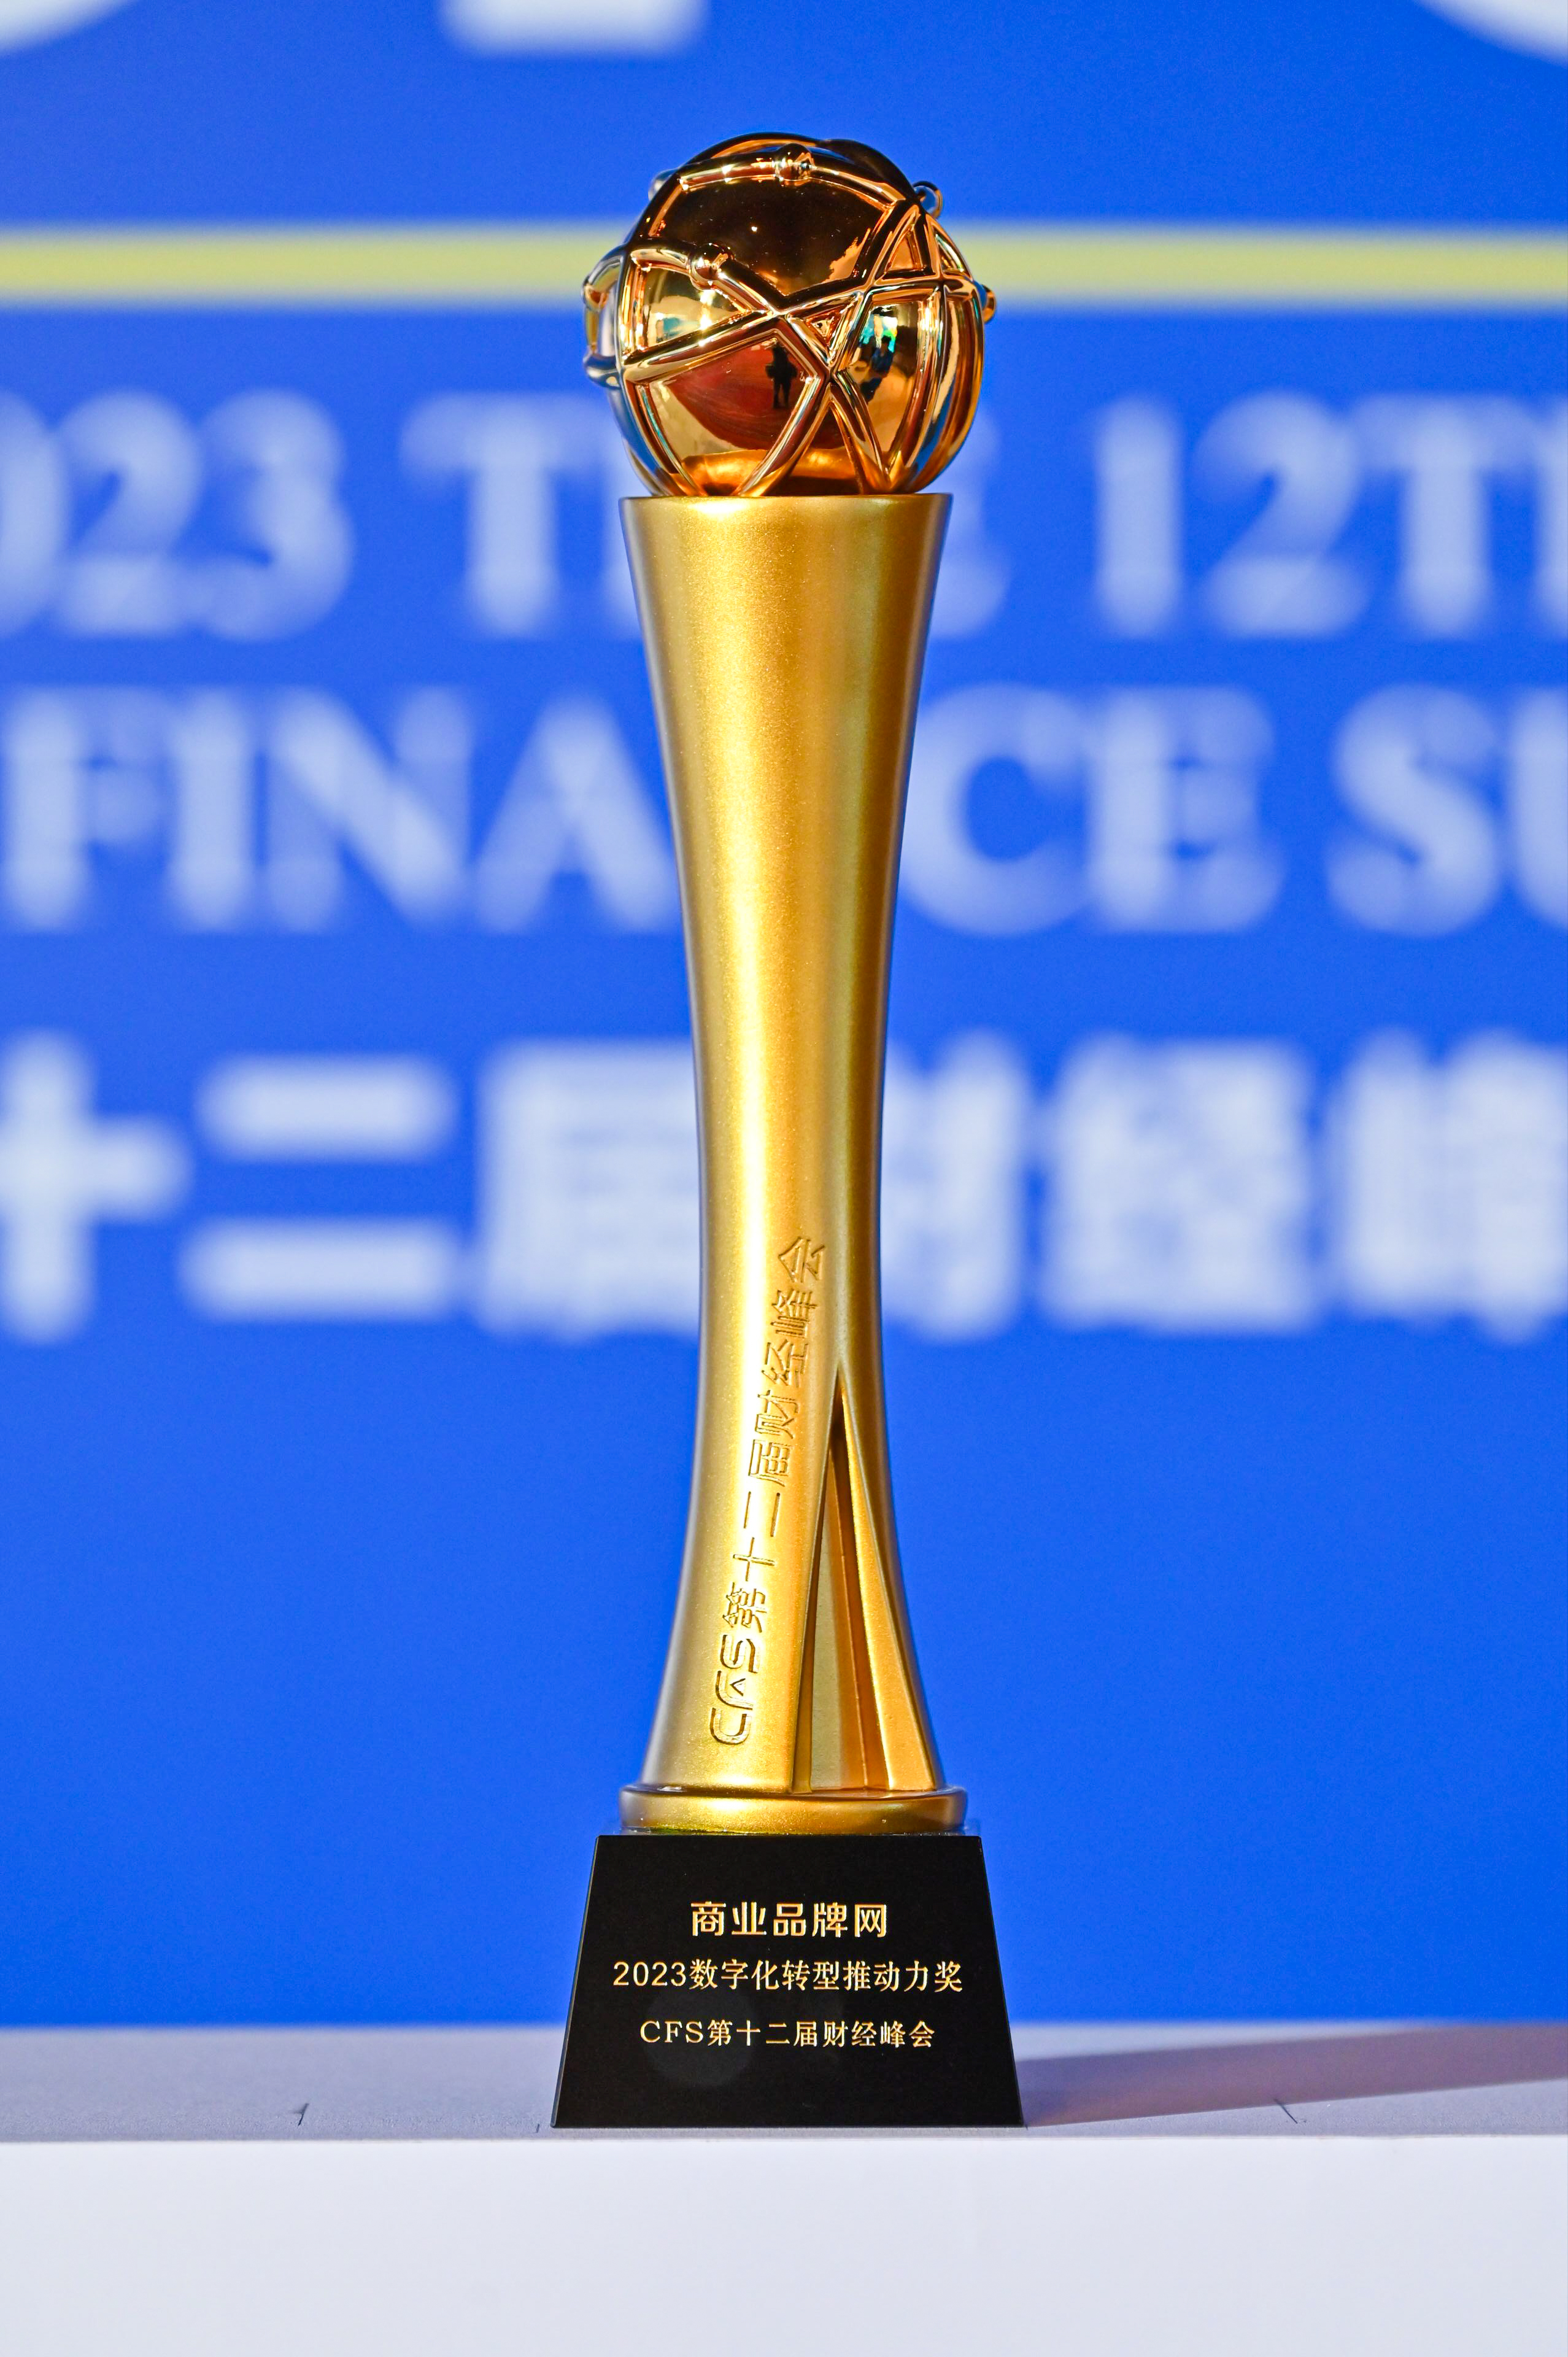 商业品牌网在CFS第十二届财经峰会上荣获“2023数字化转型推动力奖”